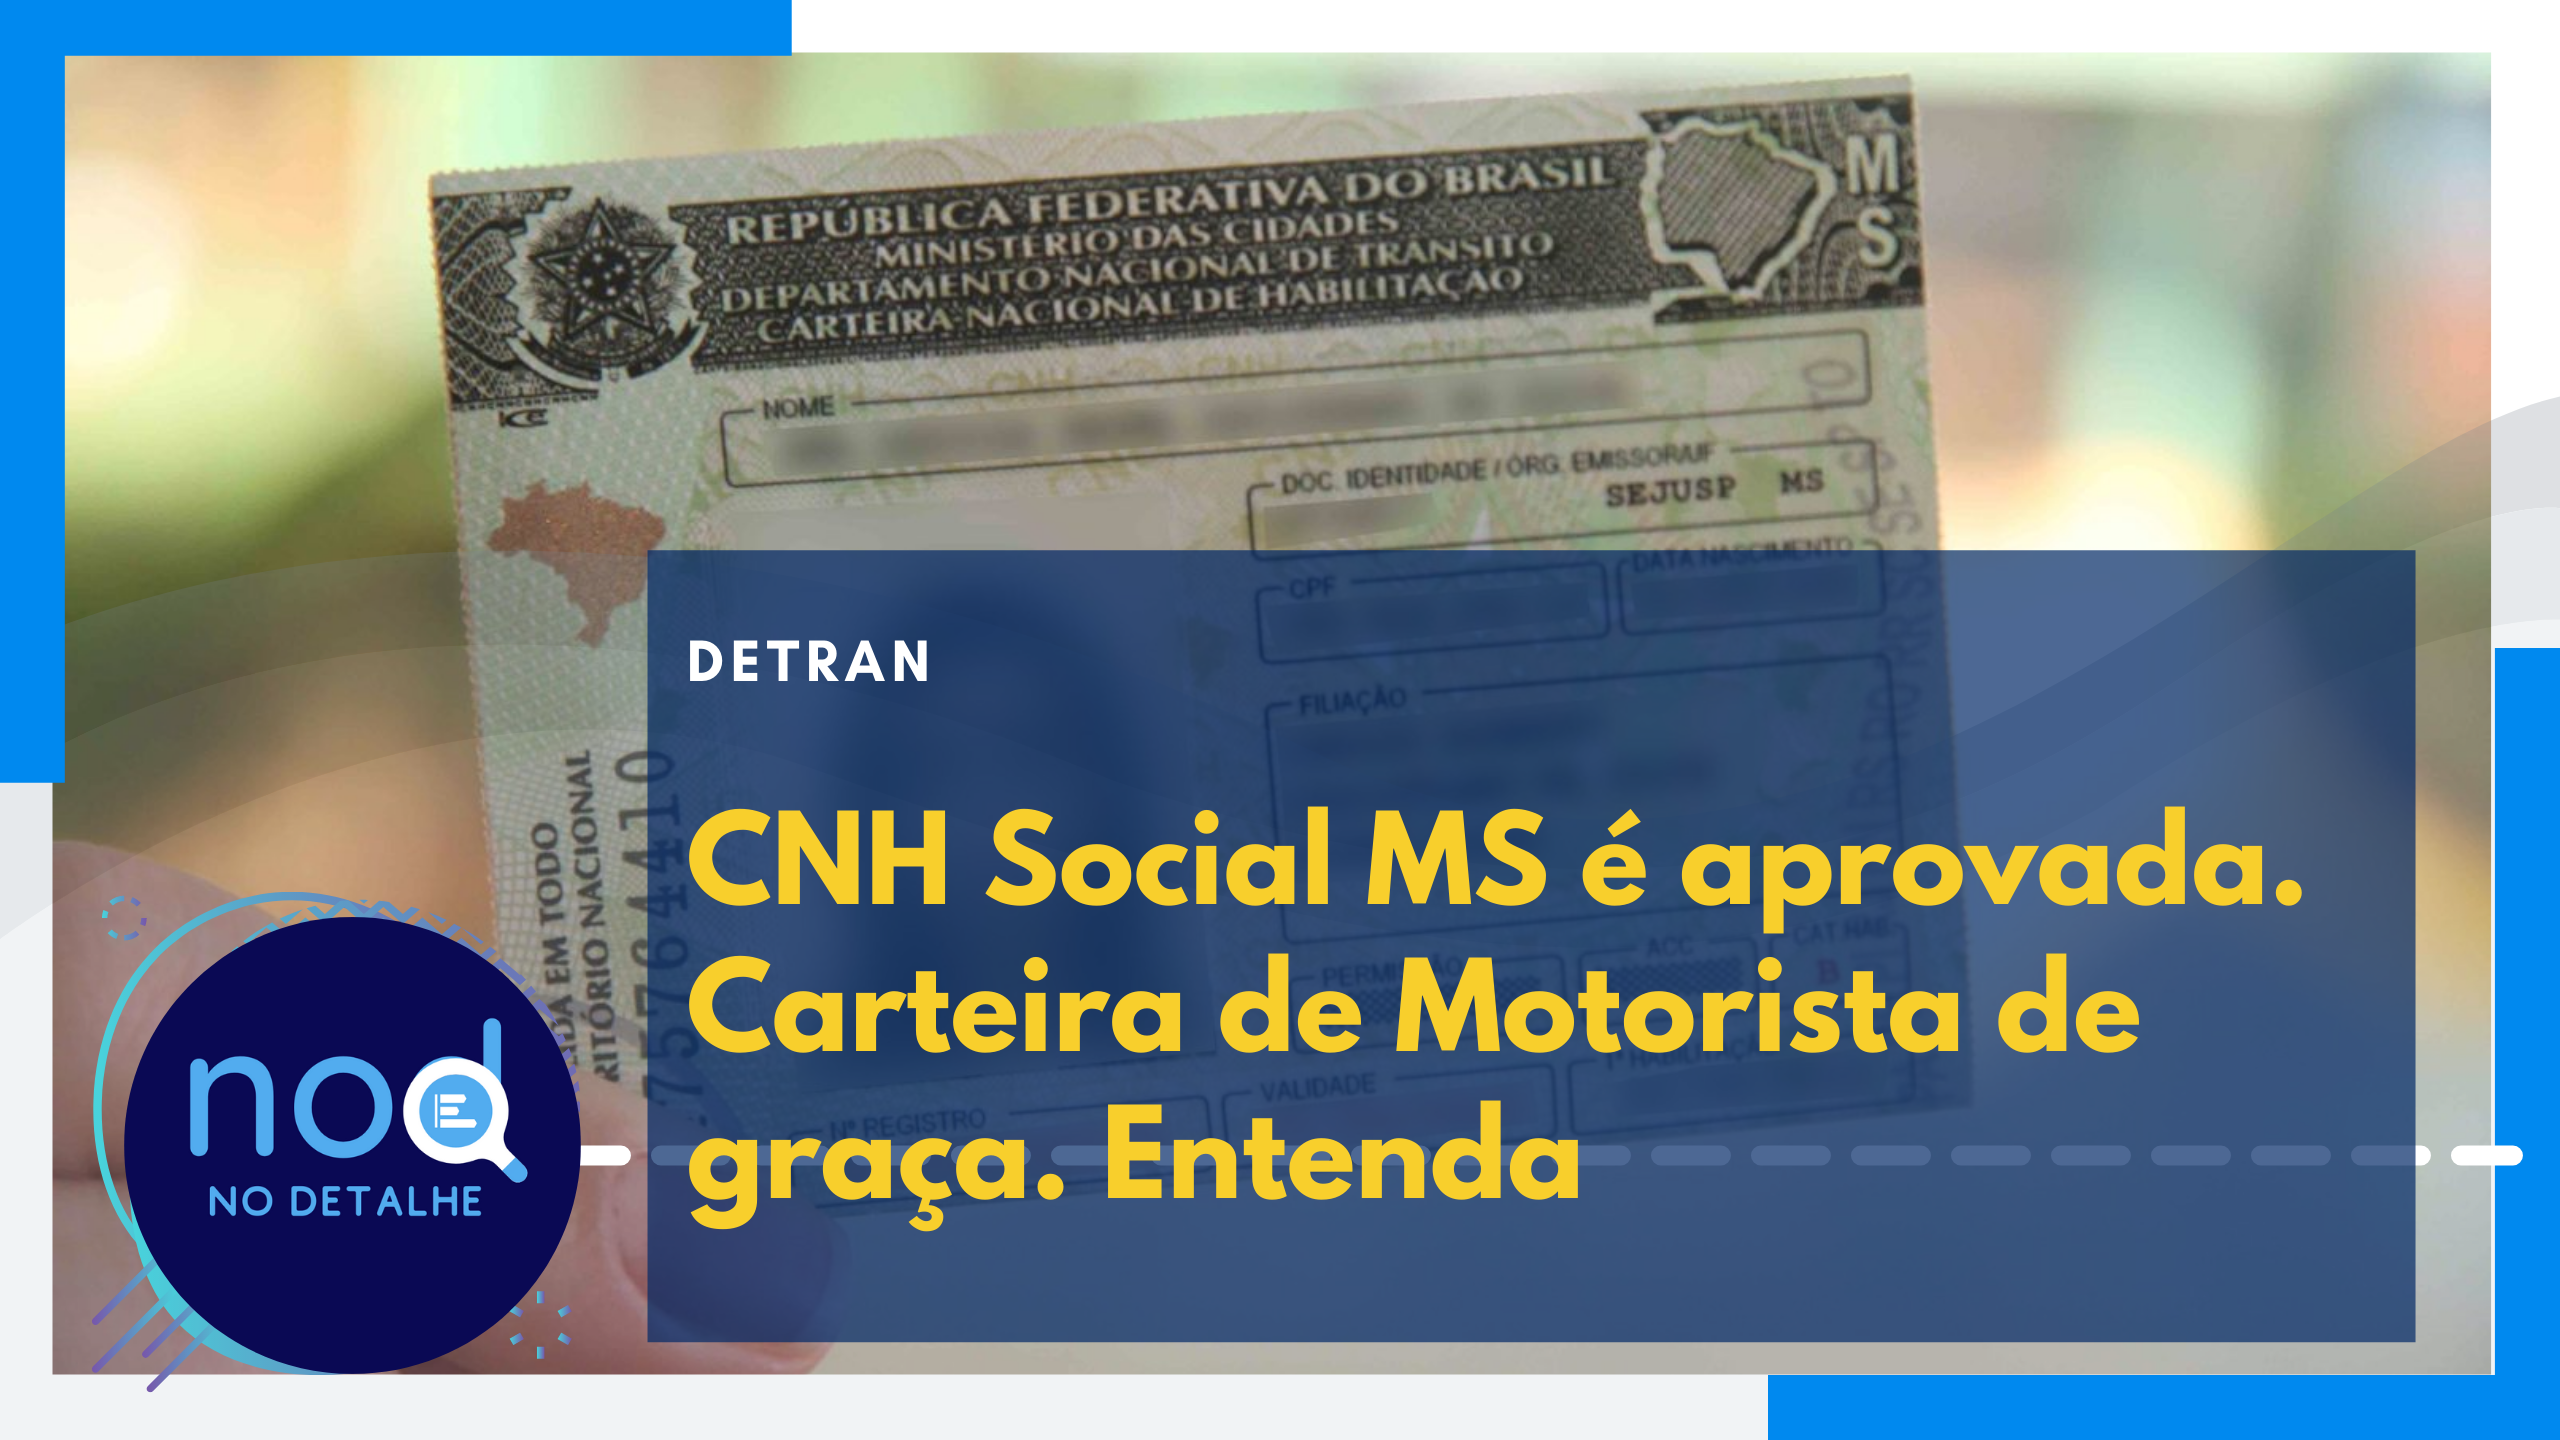 CNH Social MS: Governo lança programa de acesso à carteira de motorista gratuita. Entenda